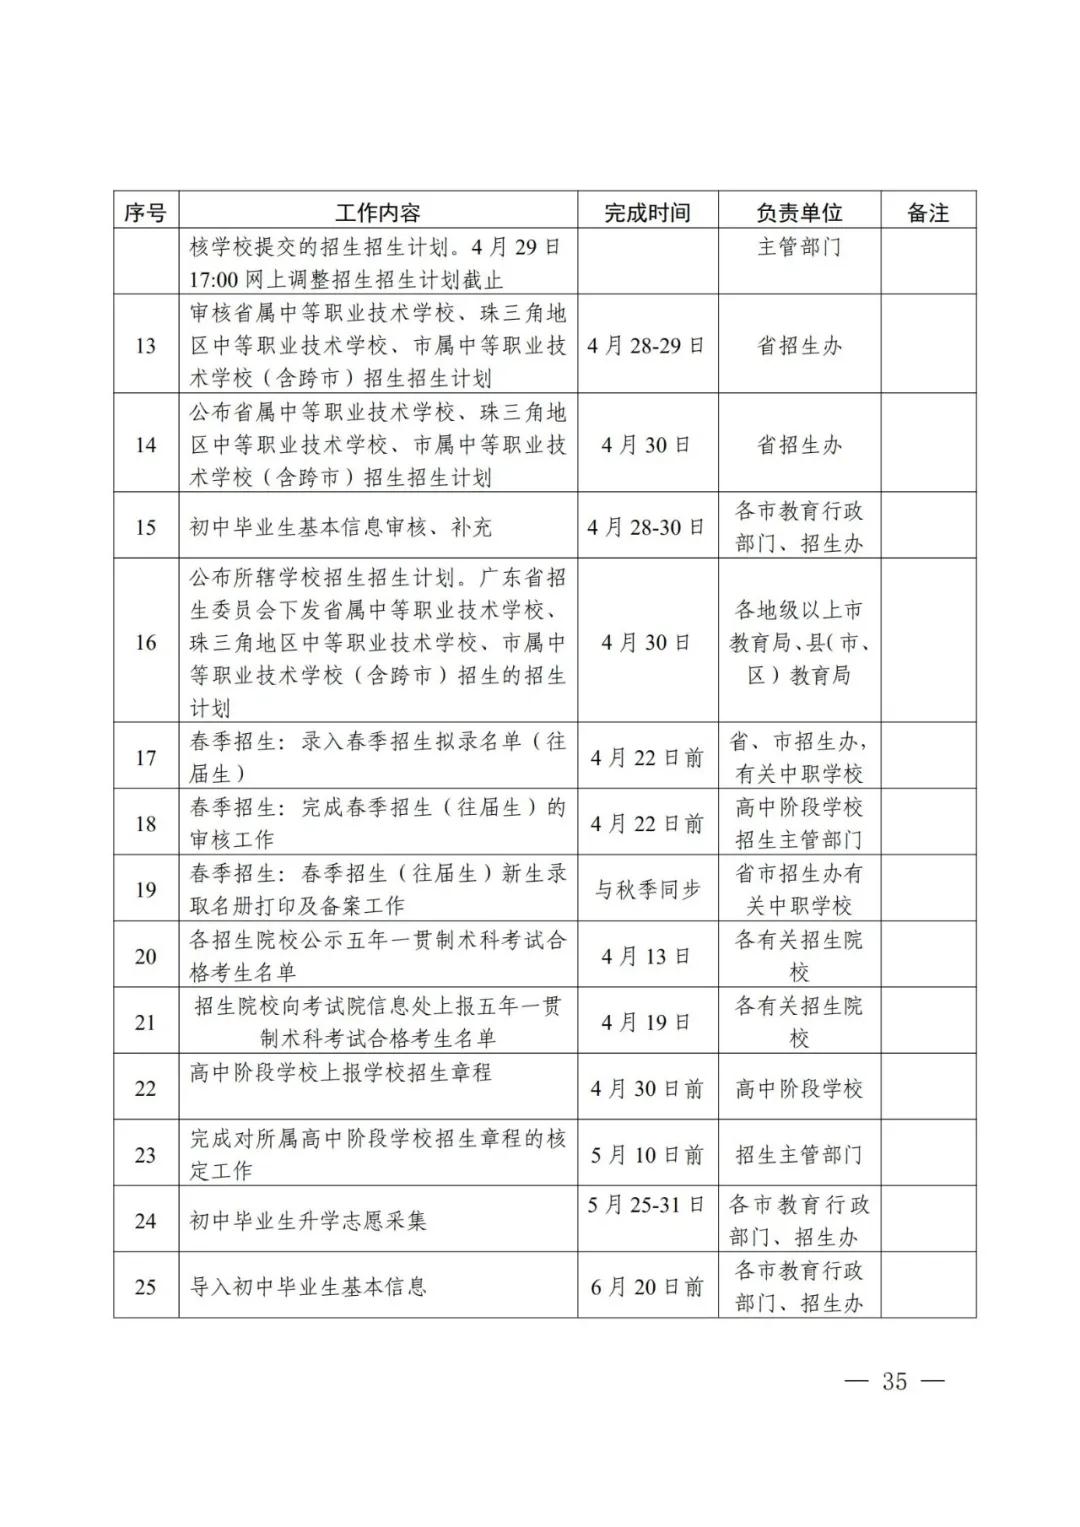 2021年广东省高中阶段学校招生录取工作实施办法公布(图2)